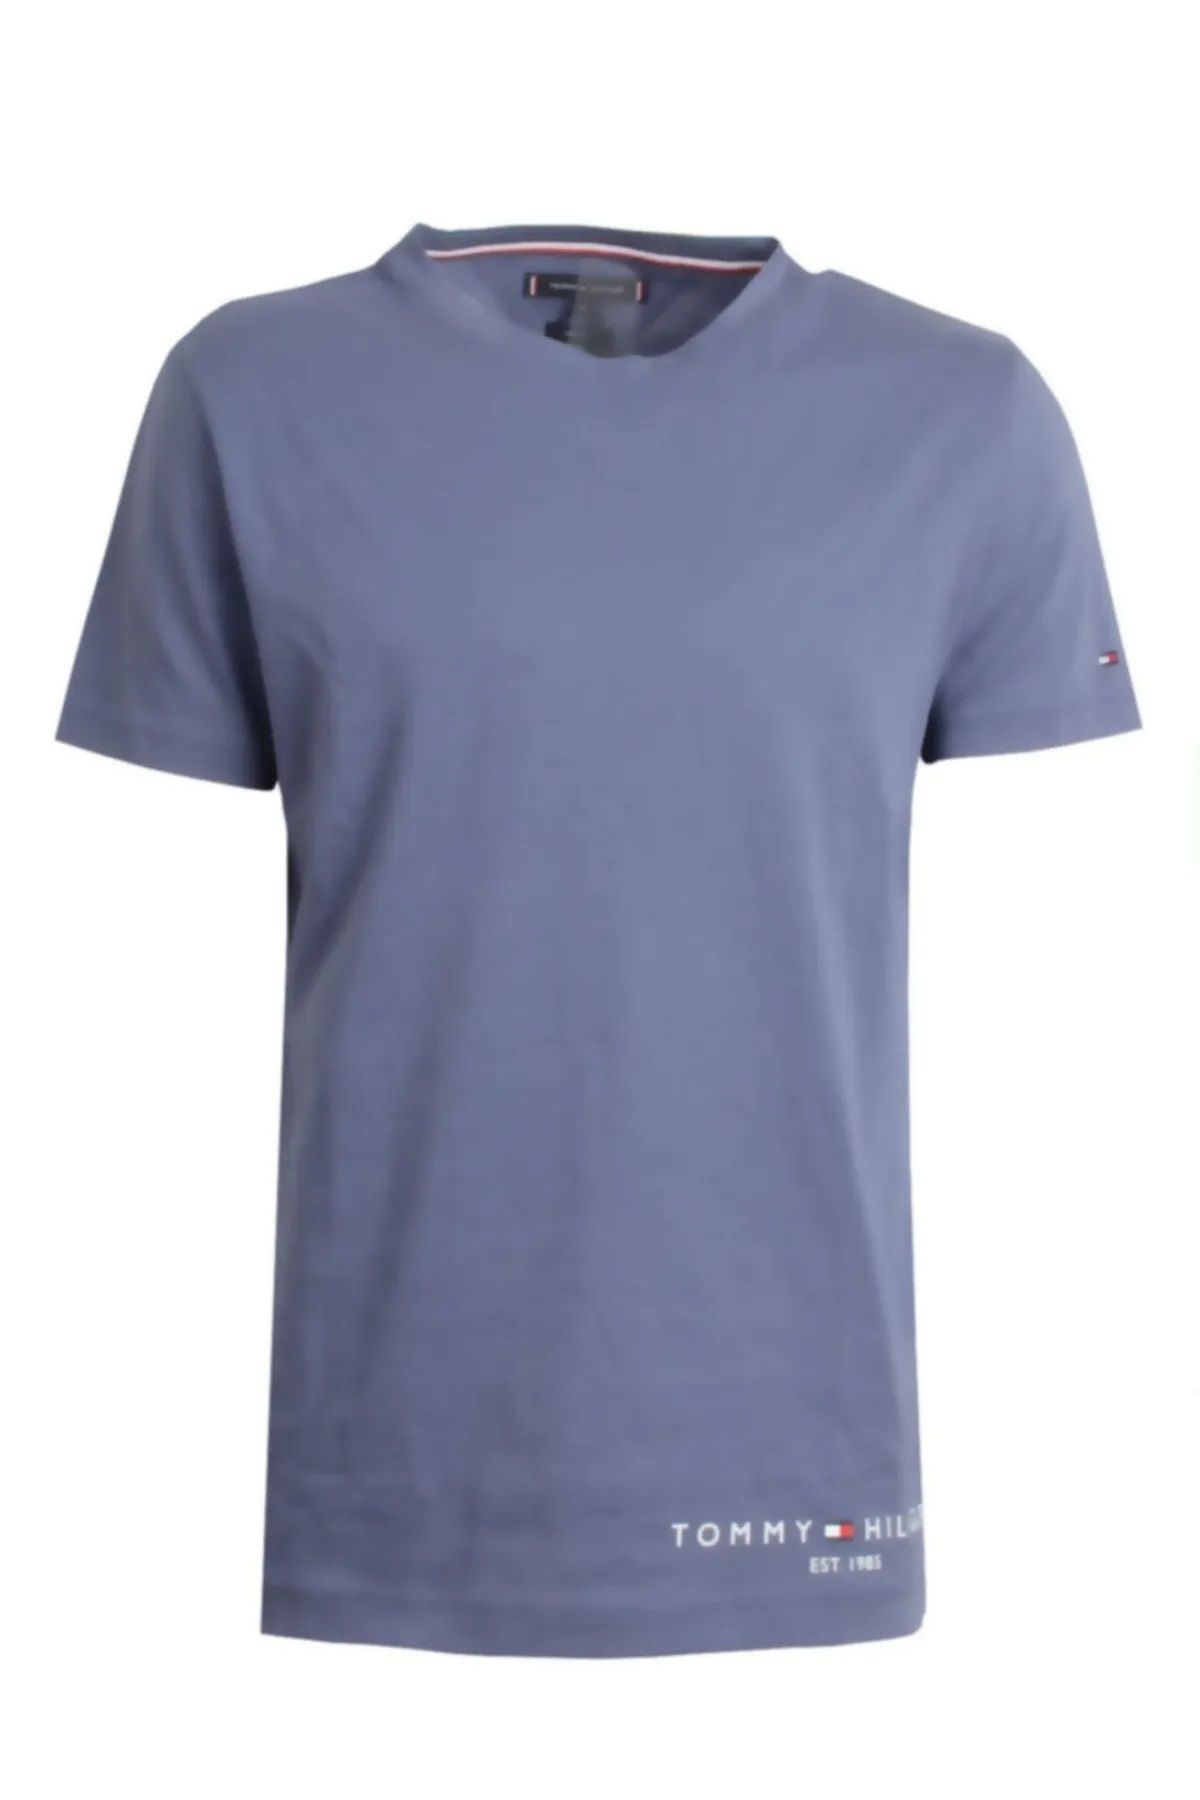 Tommy Hilfiger Logo Baskılı Regular Fit T-Shirt Organik Pamuk